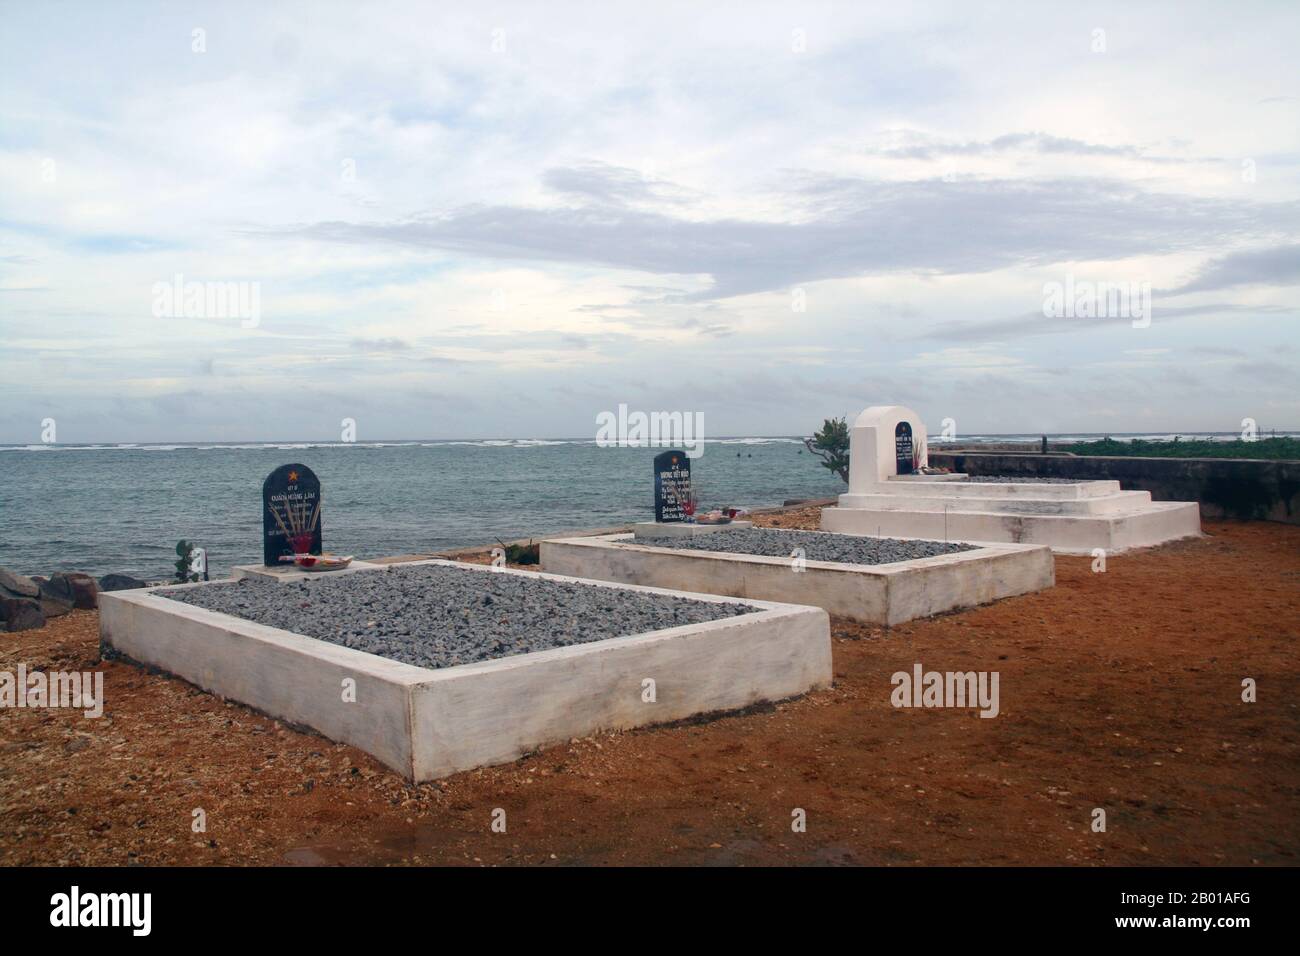 Vietnam: Tumbas de 'martyrs' (liệt sĩ) en un cementerio militar en Đảo Trường Sa o Isla Spratly en las Islas Spratly, llamado Nanwei Dao por China. Foto de Ha Petit (Licencia CC BY-SA 3,0). Las Islas Spratly son un grupo de más de 750 arrecifes, islotes, atolones, cayos e islas en el Mar del Sur de China. El archipiélago se encuentra frente a las costas de Filipinas y Malasia (Sabah), cerca de un tercio del camino hacia el sur de Vietnam. Comprenden menos de cuatro kilómetros cuadrados de superficie terrestre distribuidos en más de 425.000 kilómetros cuadrados de mar. Foto de stock